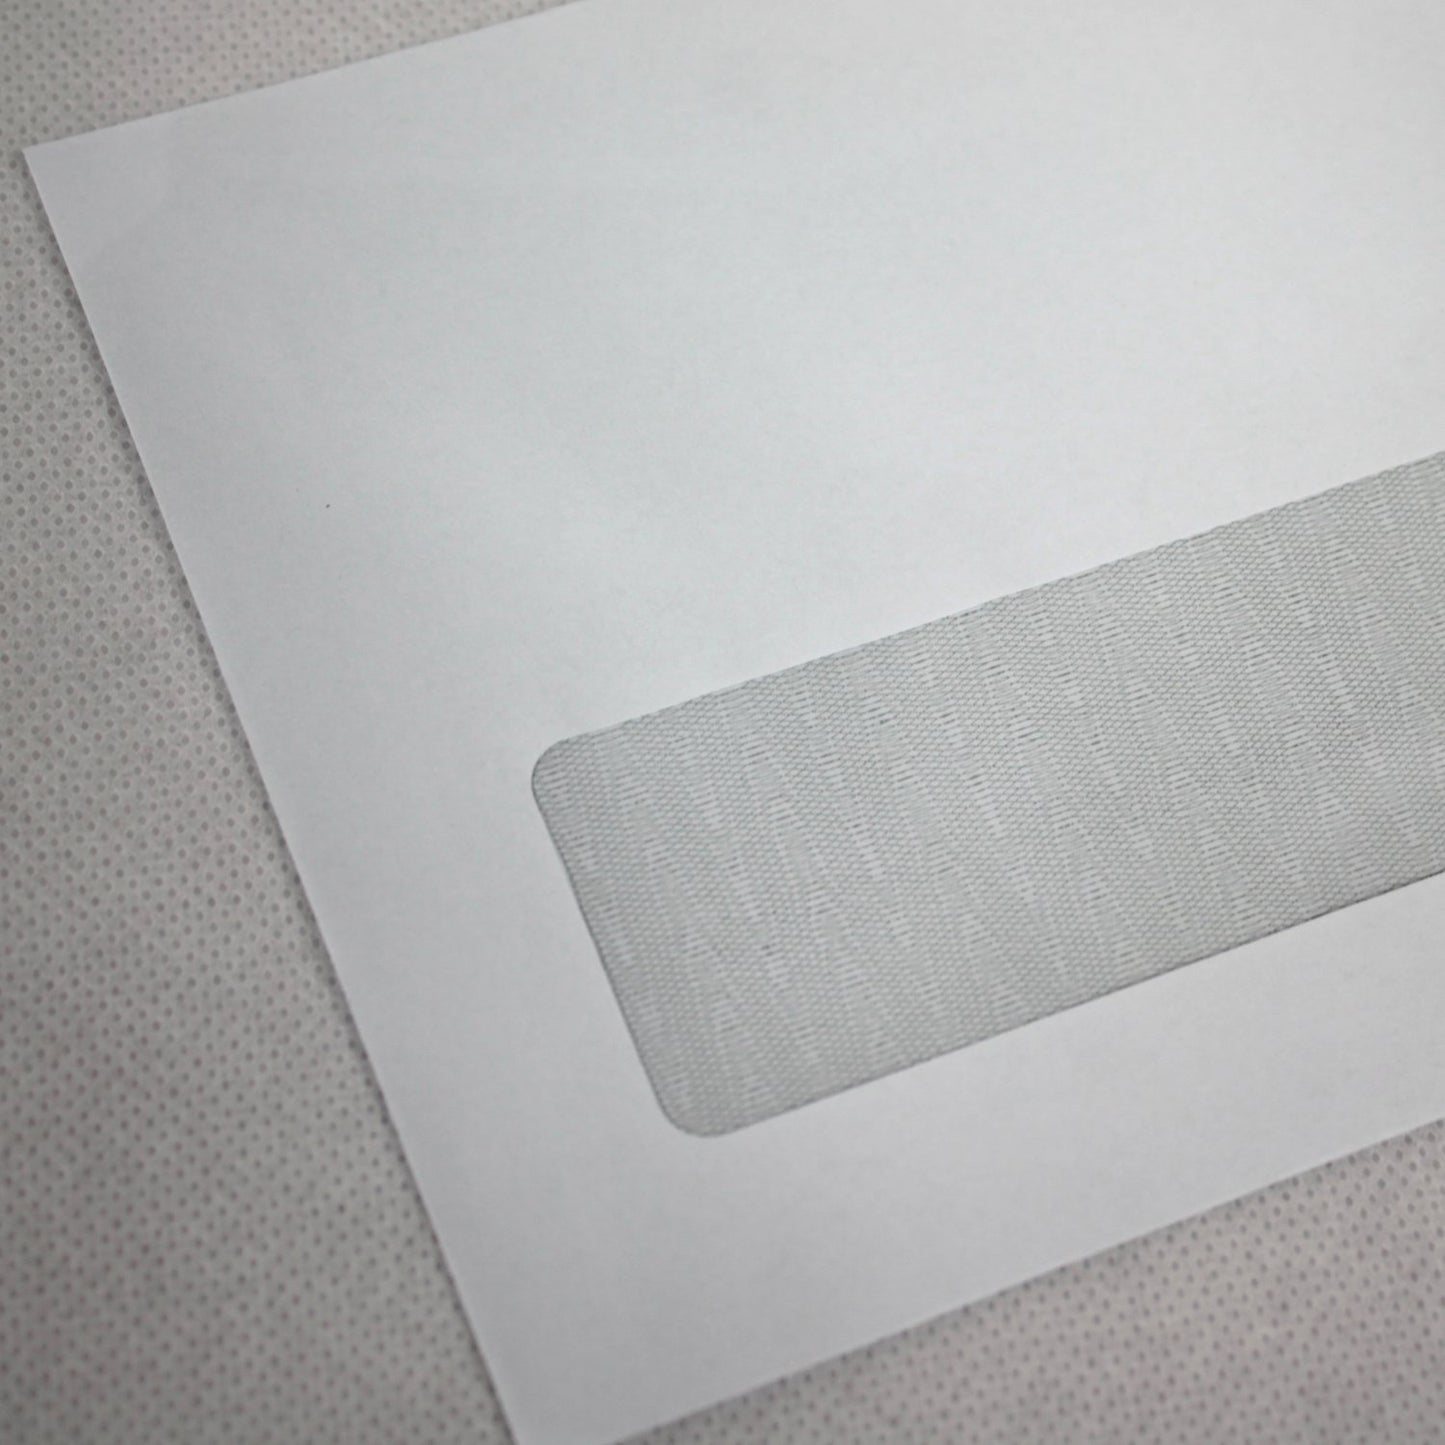 121x235mm DL+ White Gummed Envelopes (Window 35x90mm)